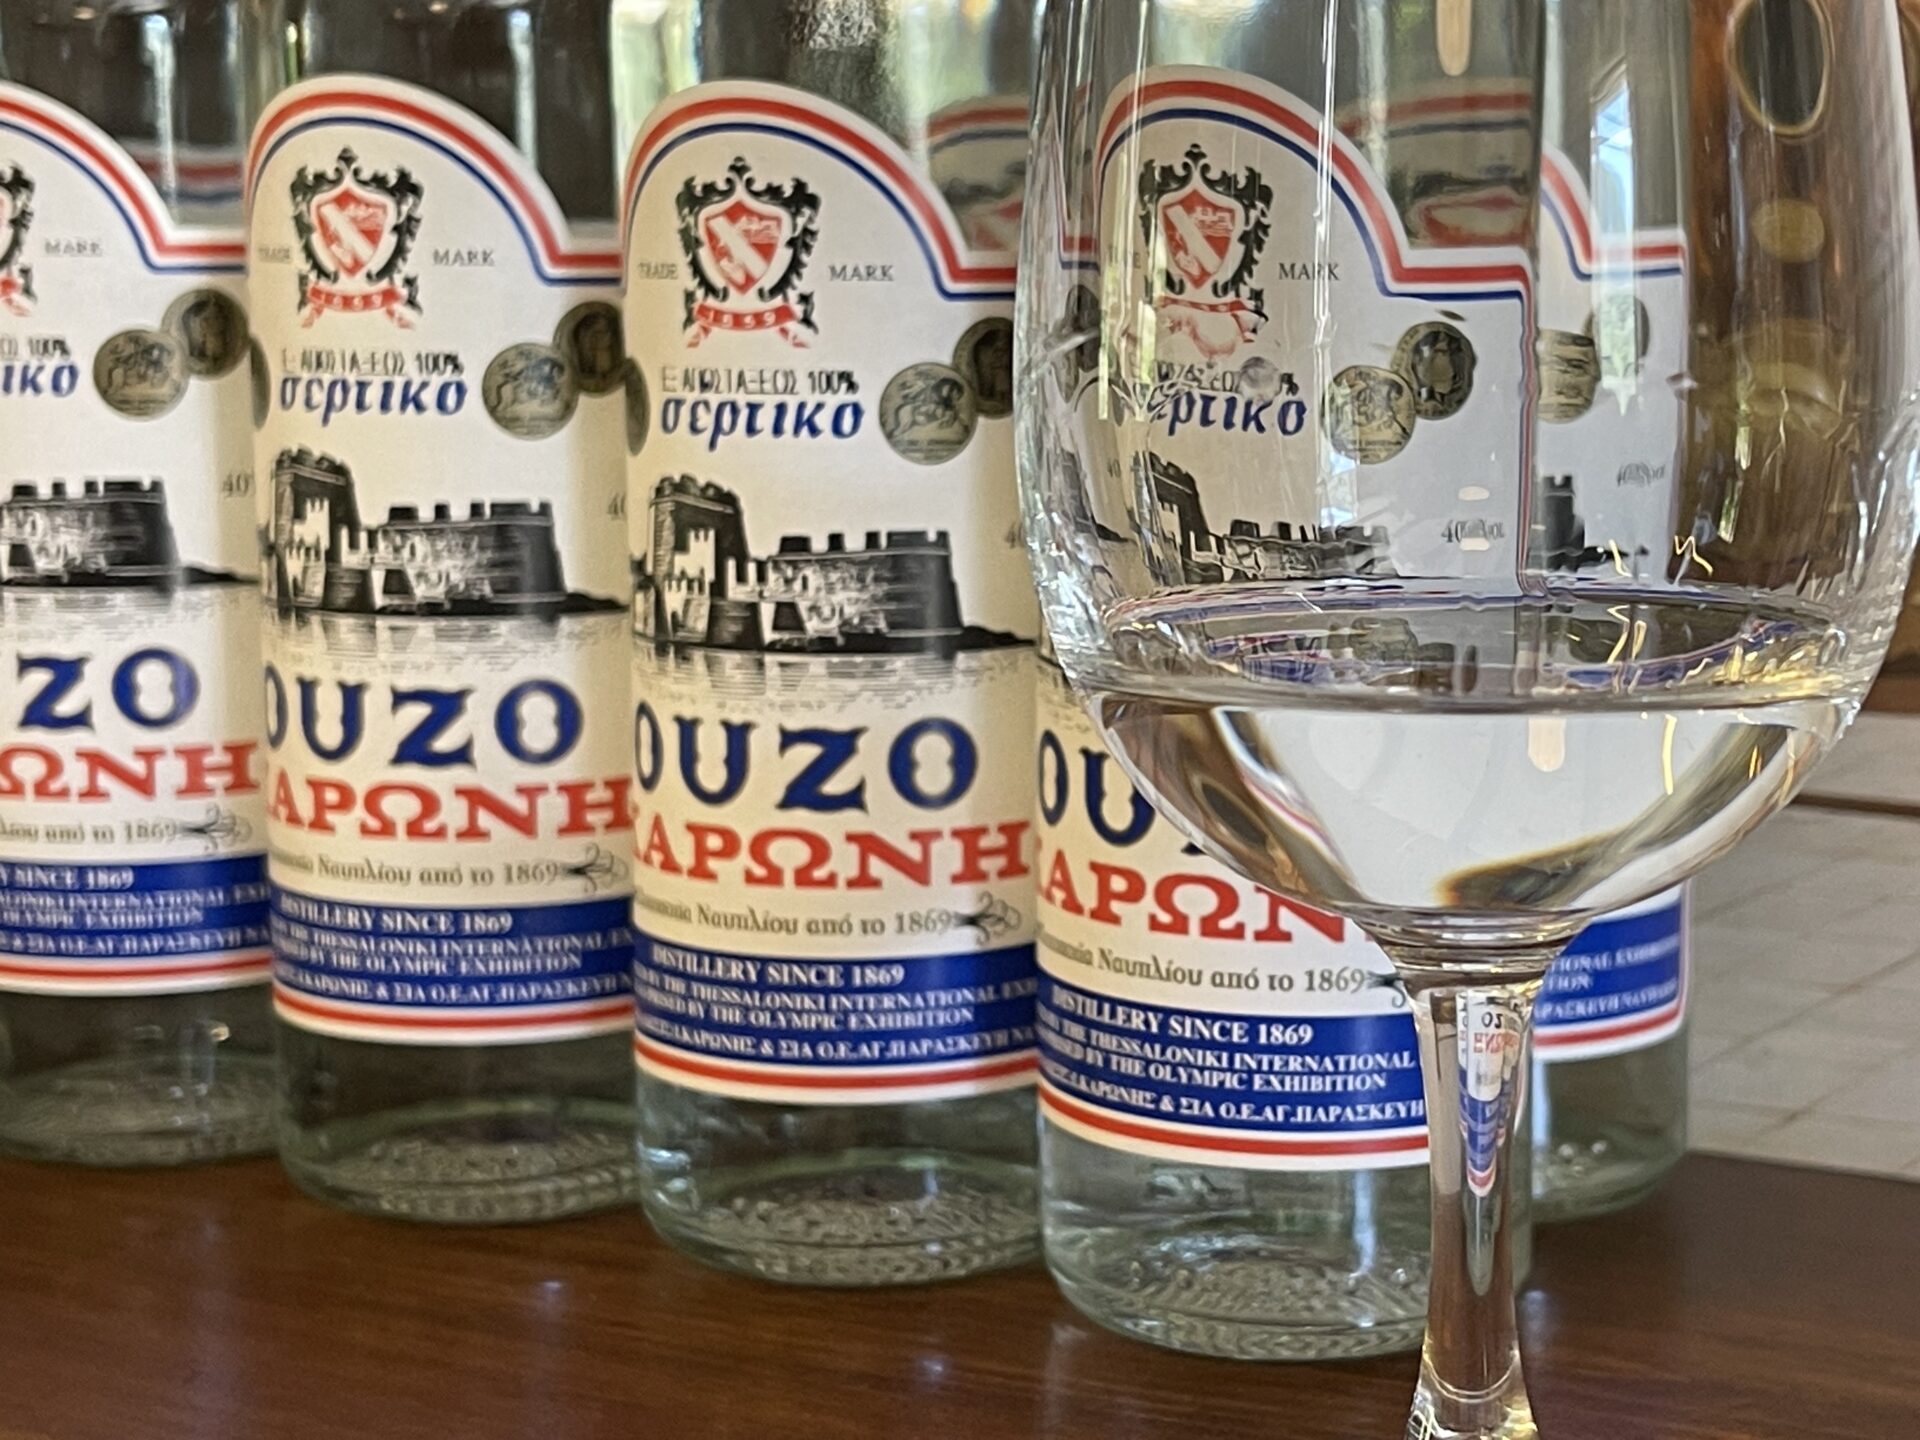 Karonis Distillery – An Ouzo & Tsipouro Distillery in Nafplio, Greece